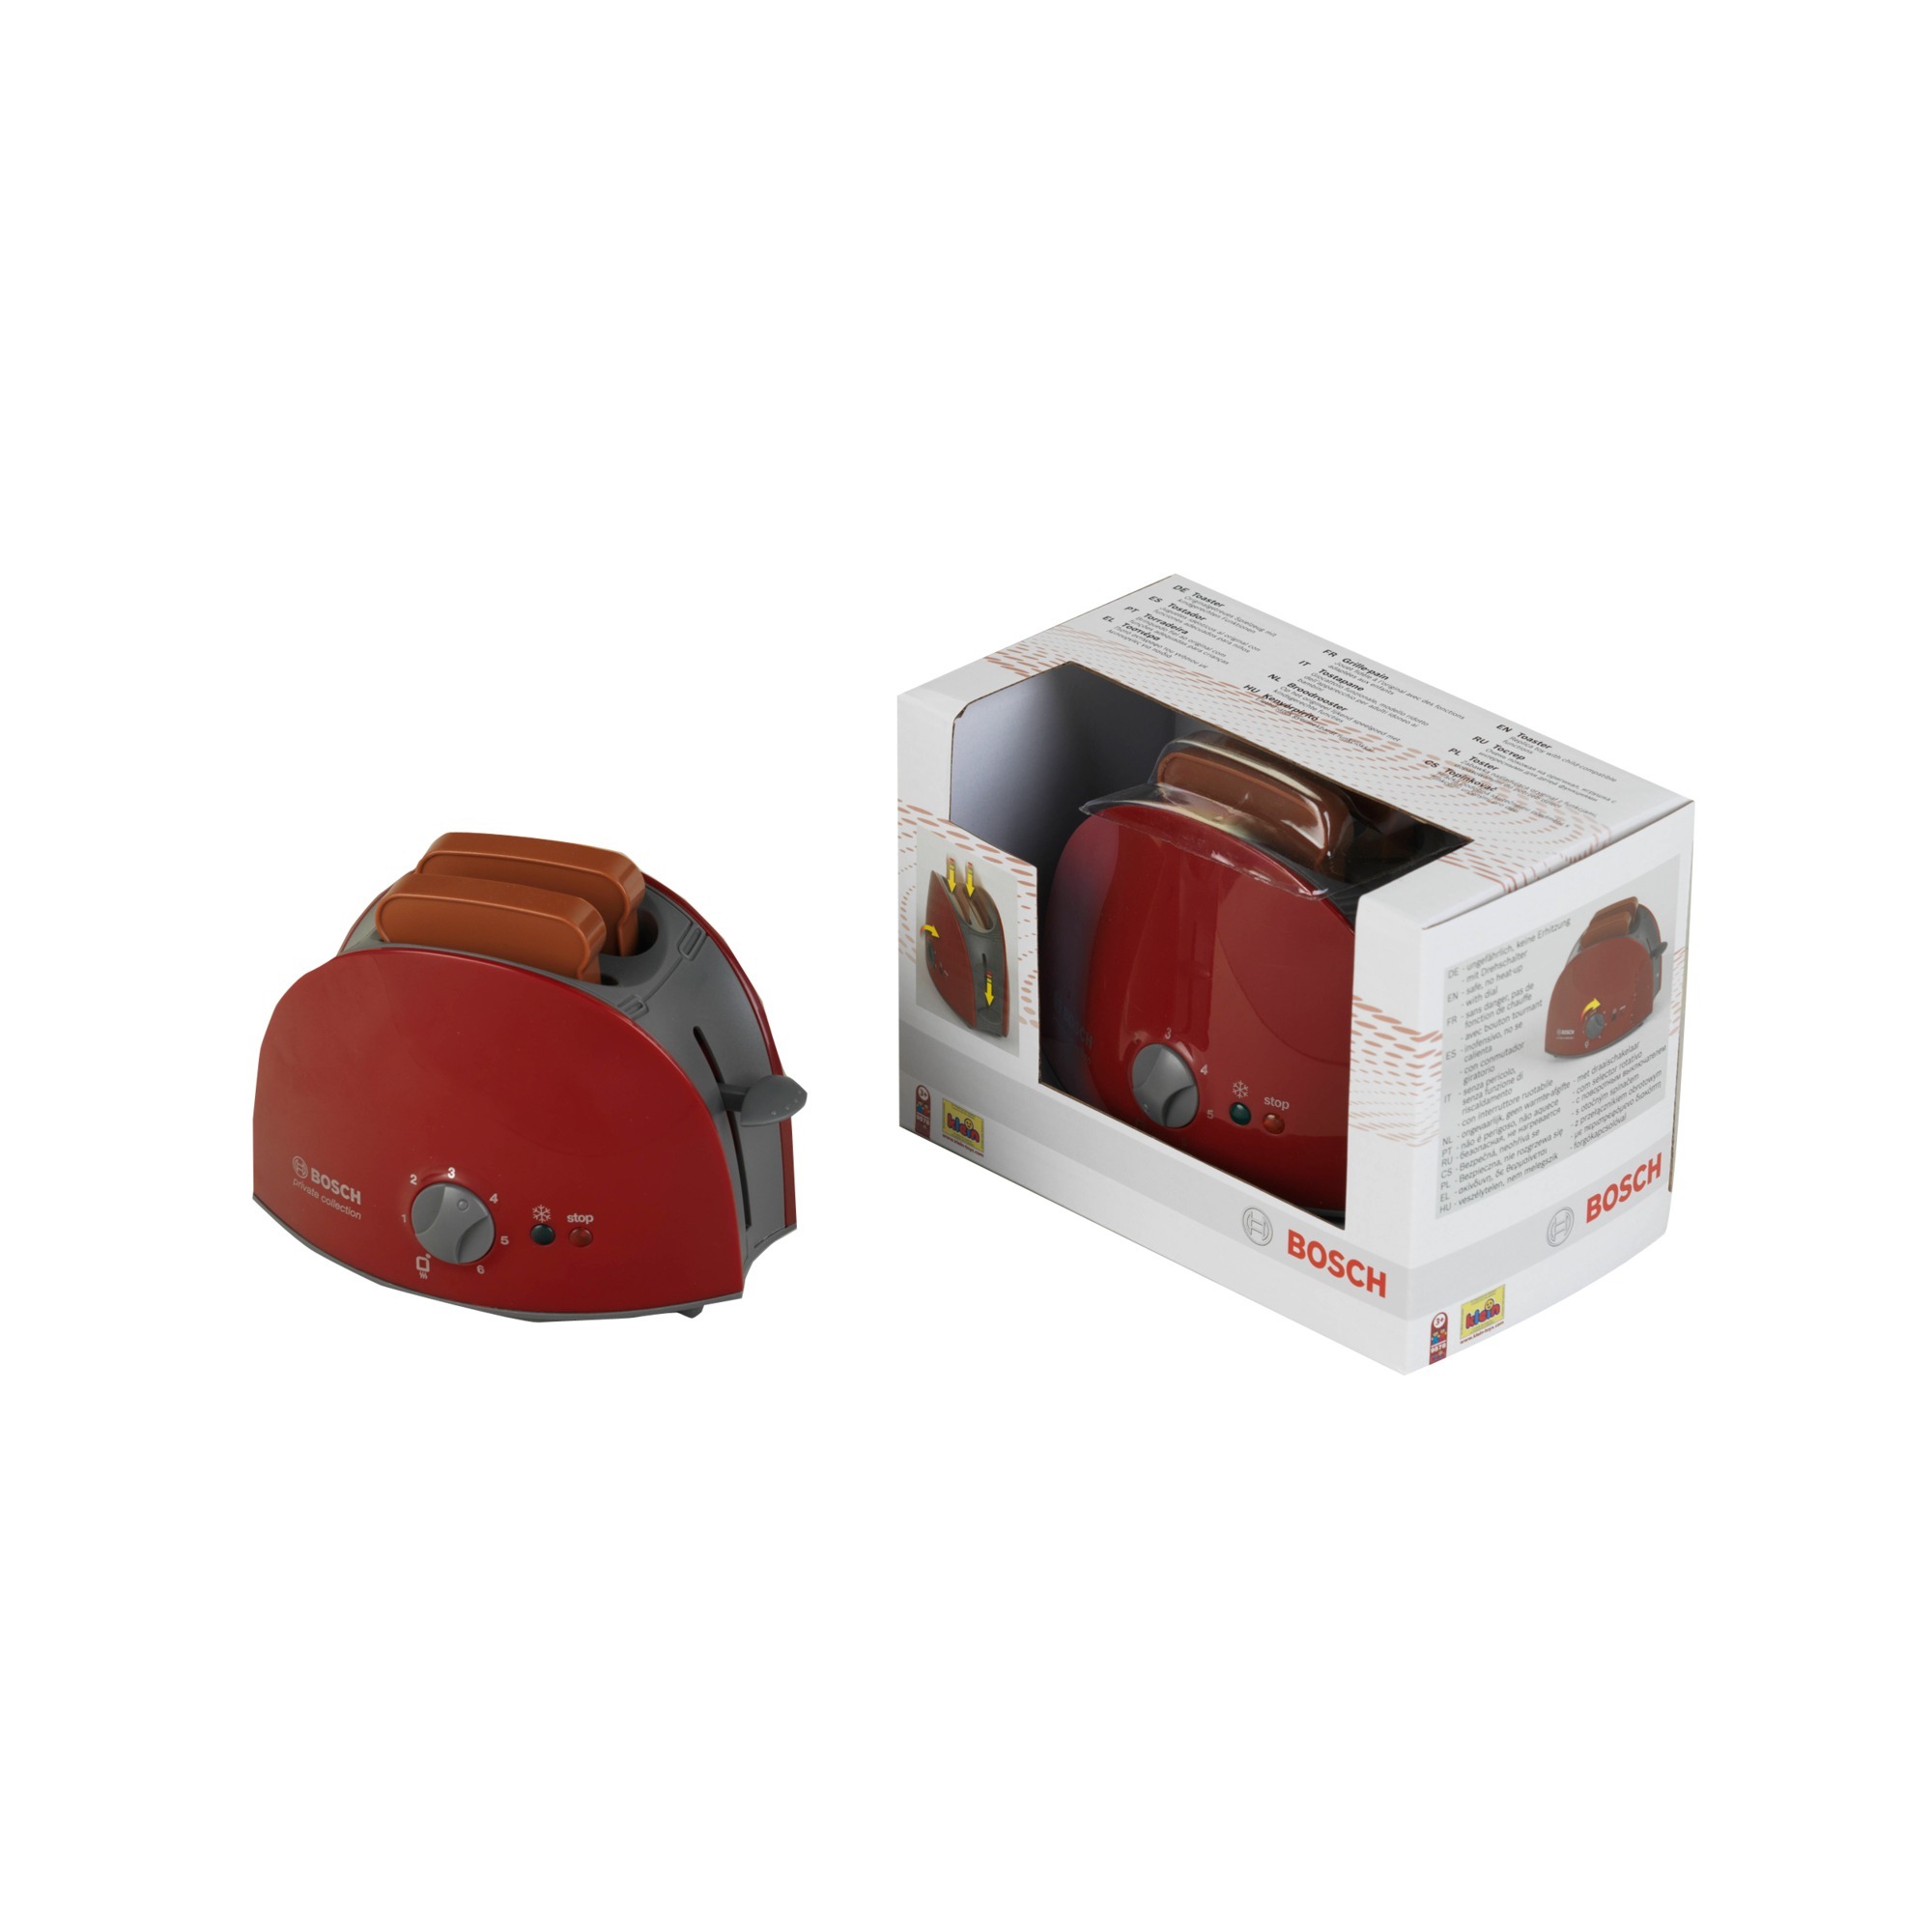 Image of Alternate - Bosch Toaster, Kinderhaushaltsgerät online einkaufen bei Alternate